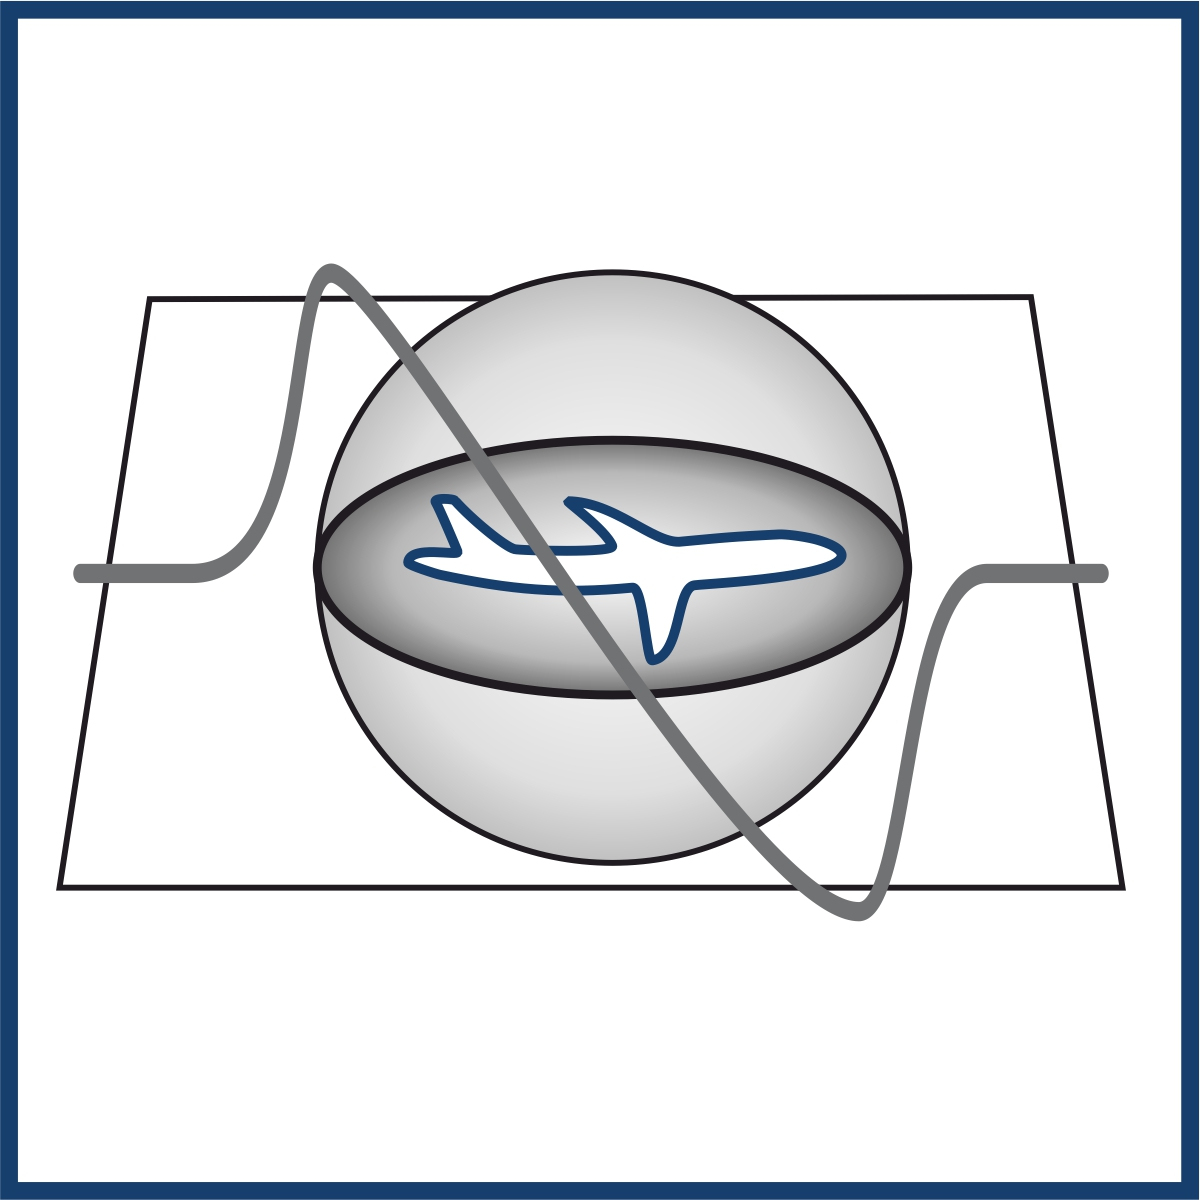 Piktogramm eines Flugzeugs in einer Warp-Blase